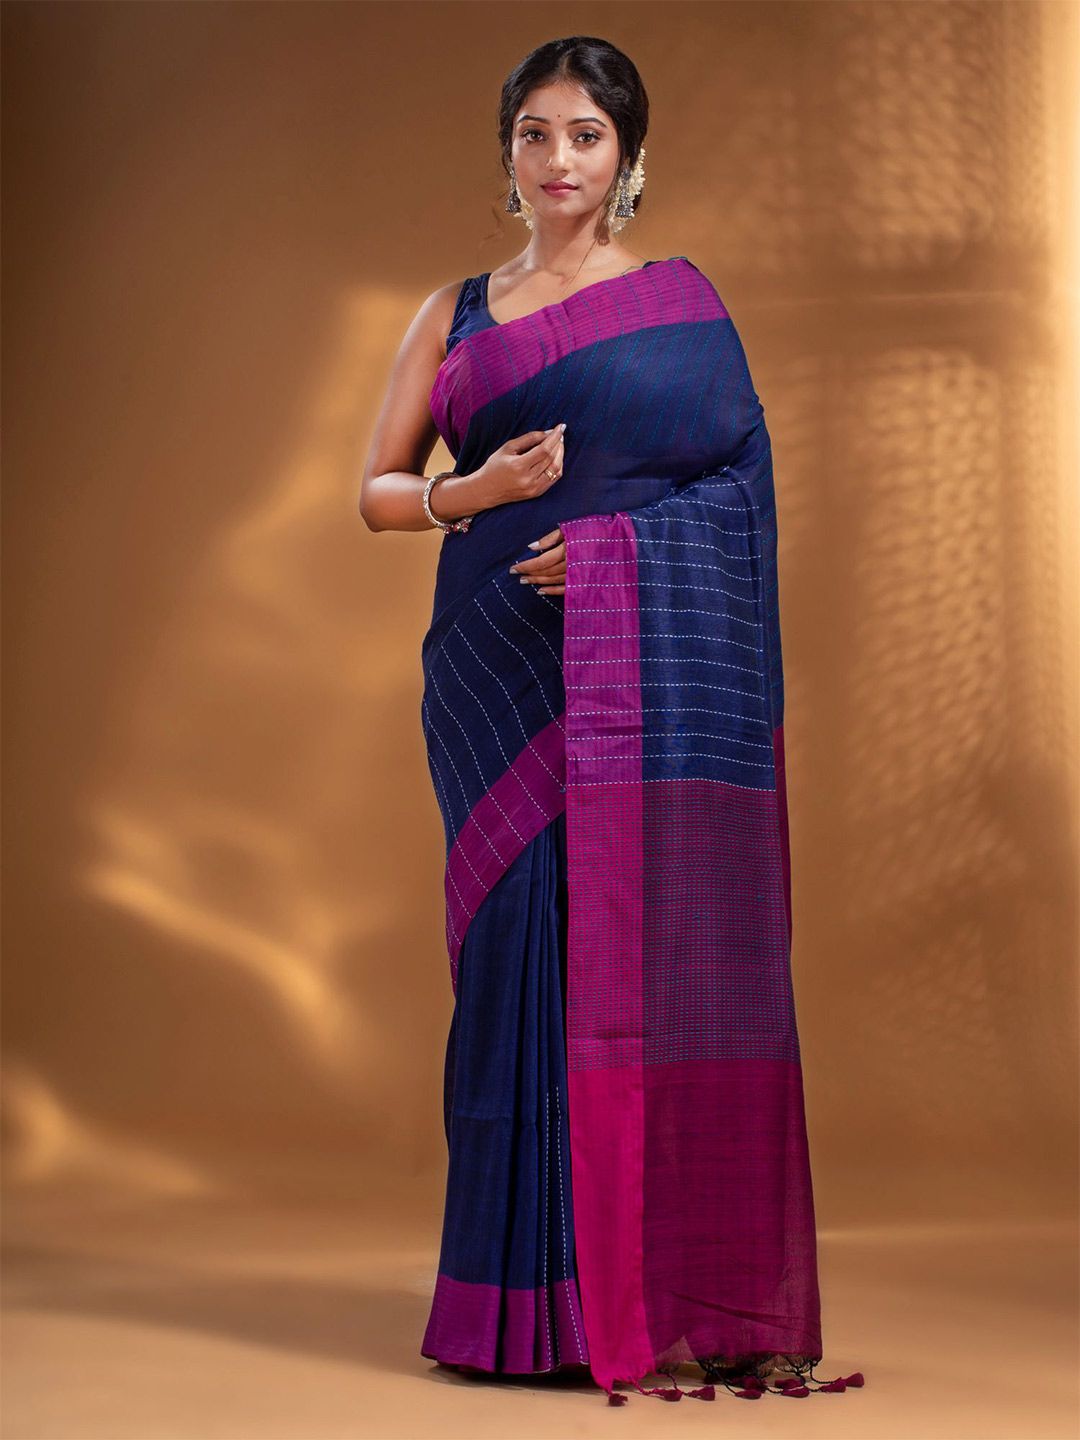 Arhi Blue & White Woven Design Zari Pure Linen Saree Price in India